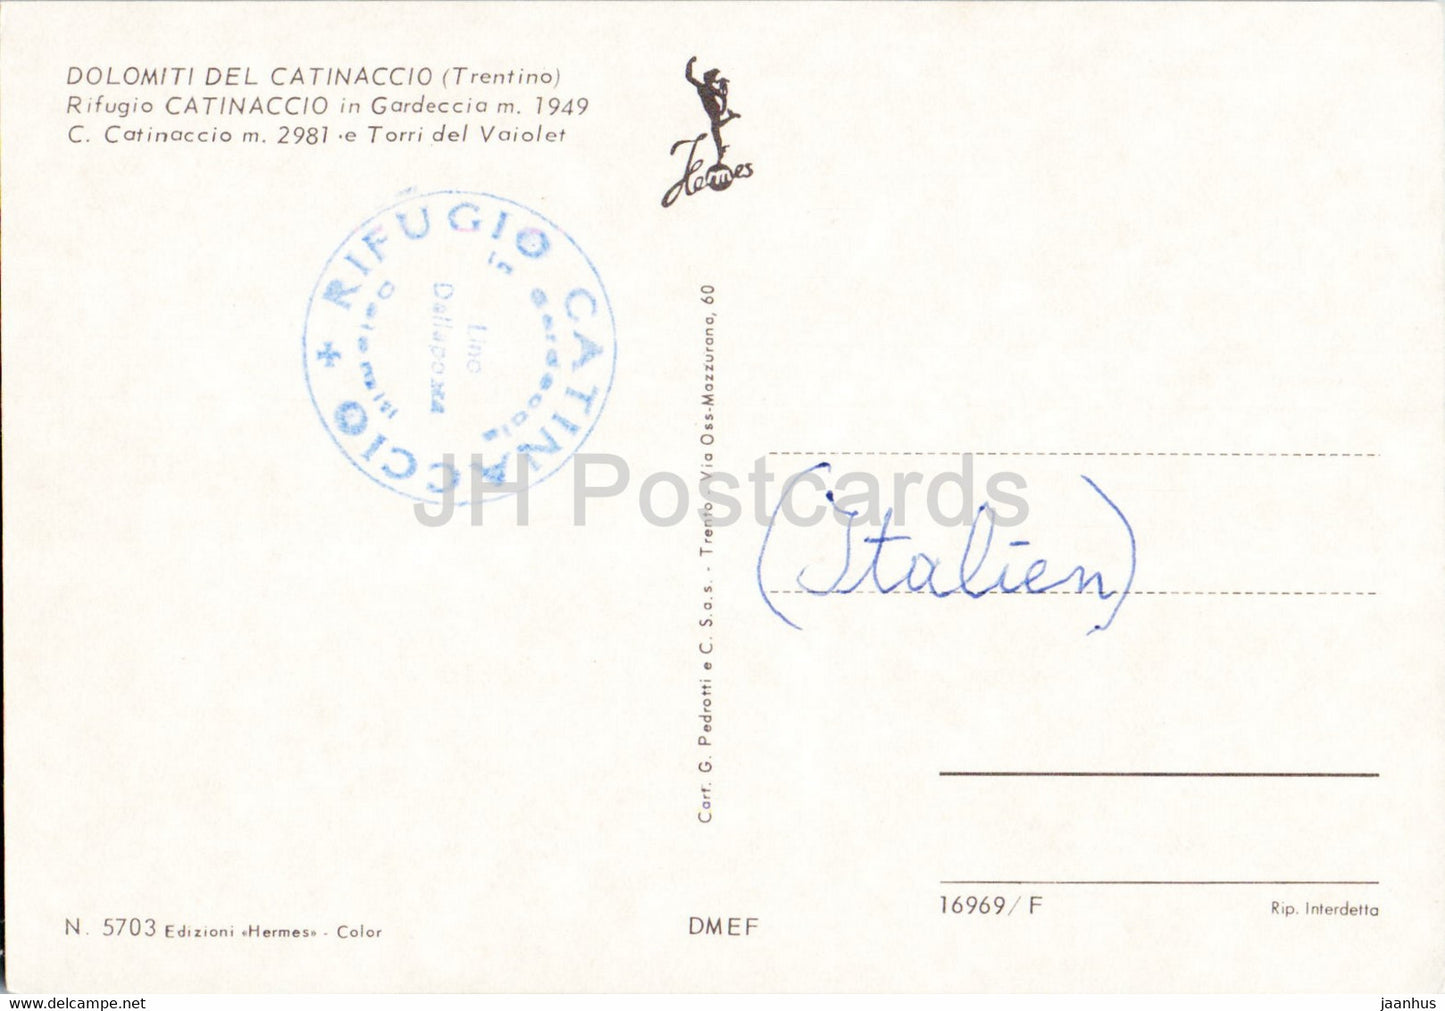 Rifugio Catinaccio in Gardeccia - 5703 - Italien - gebraucht